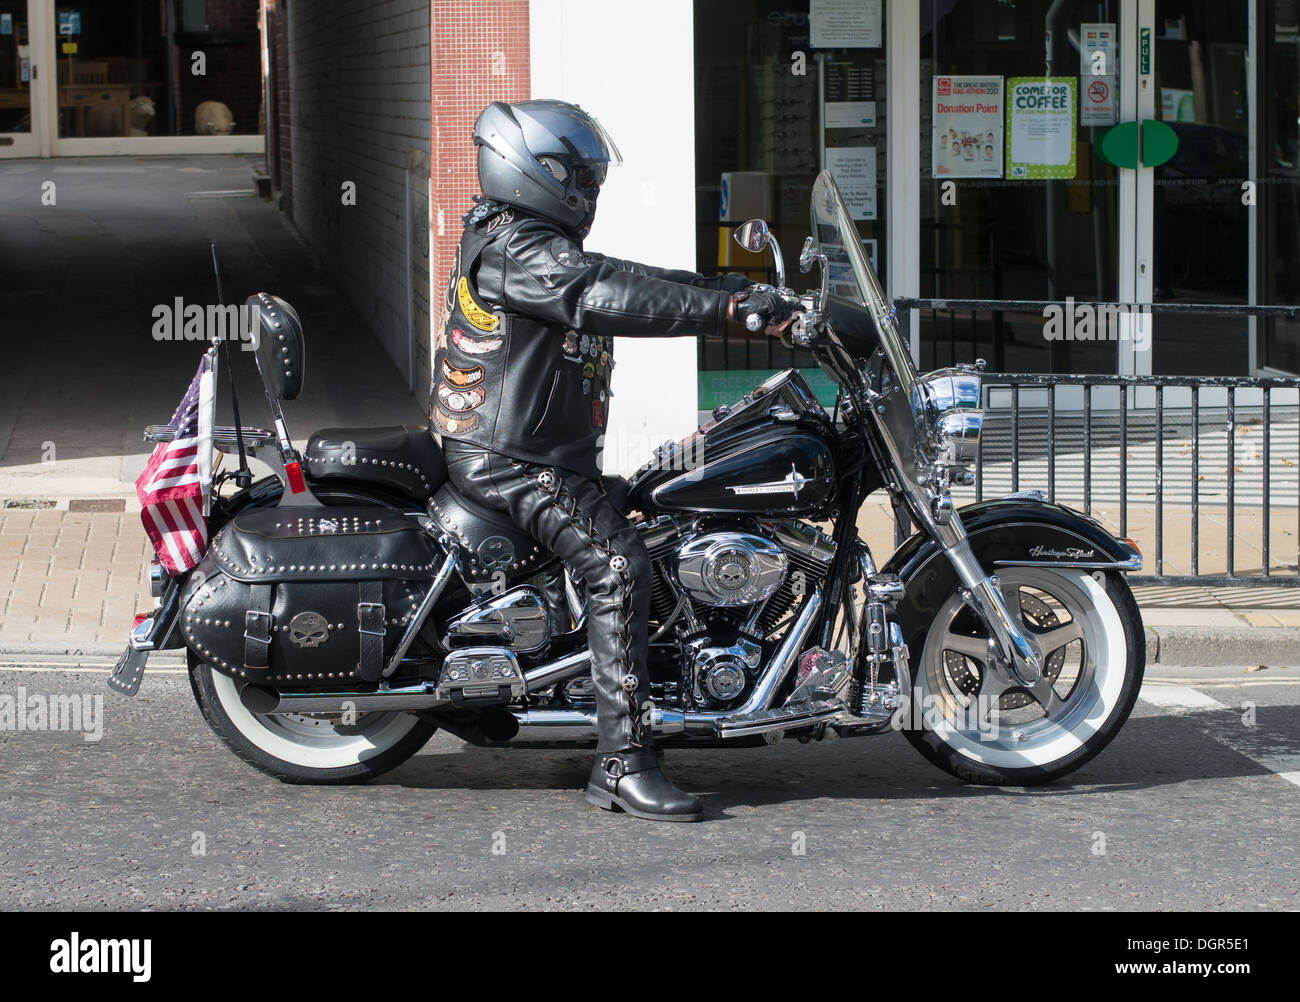 Un motocycliste vêtue de cuir noir à cheval sur une moto Harley Davidson Otley, Yorkshire, Angleterre, Royaume-Uni Banque D'Images